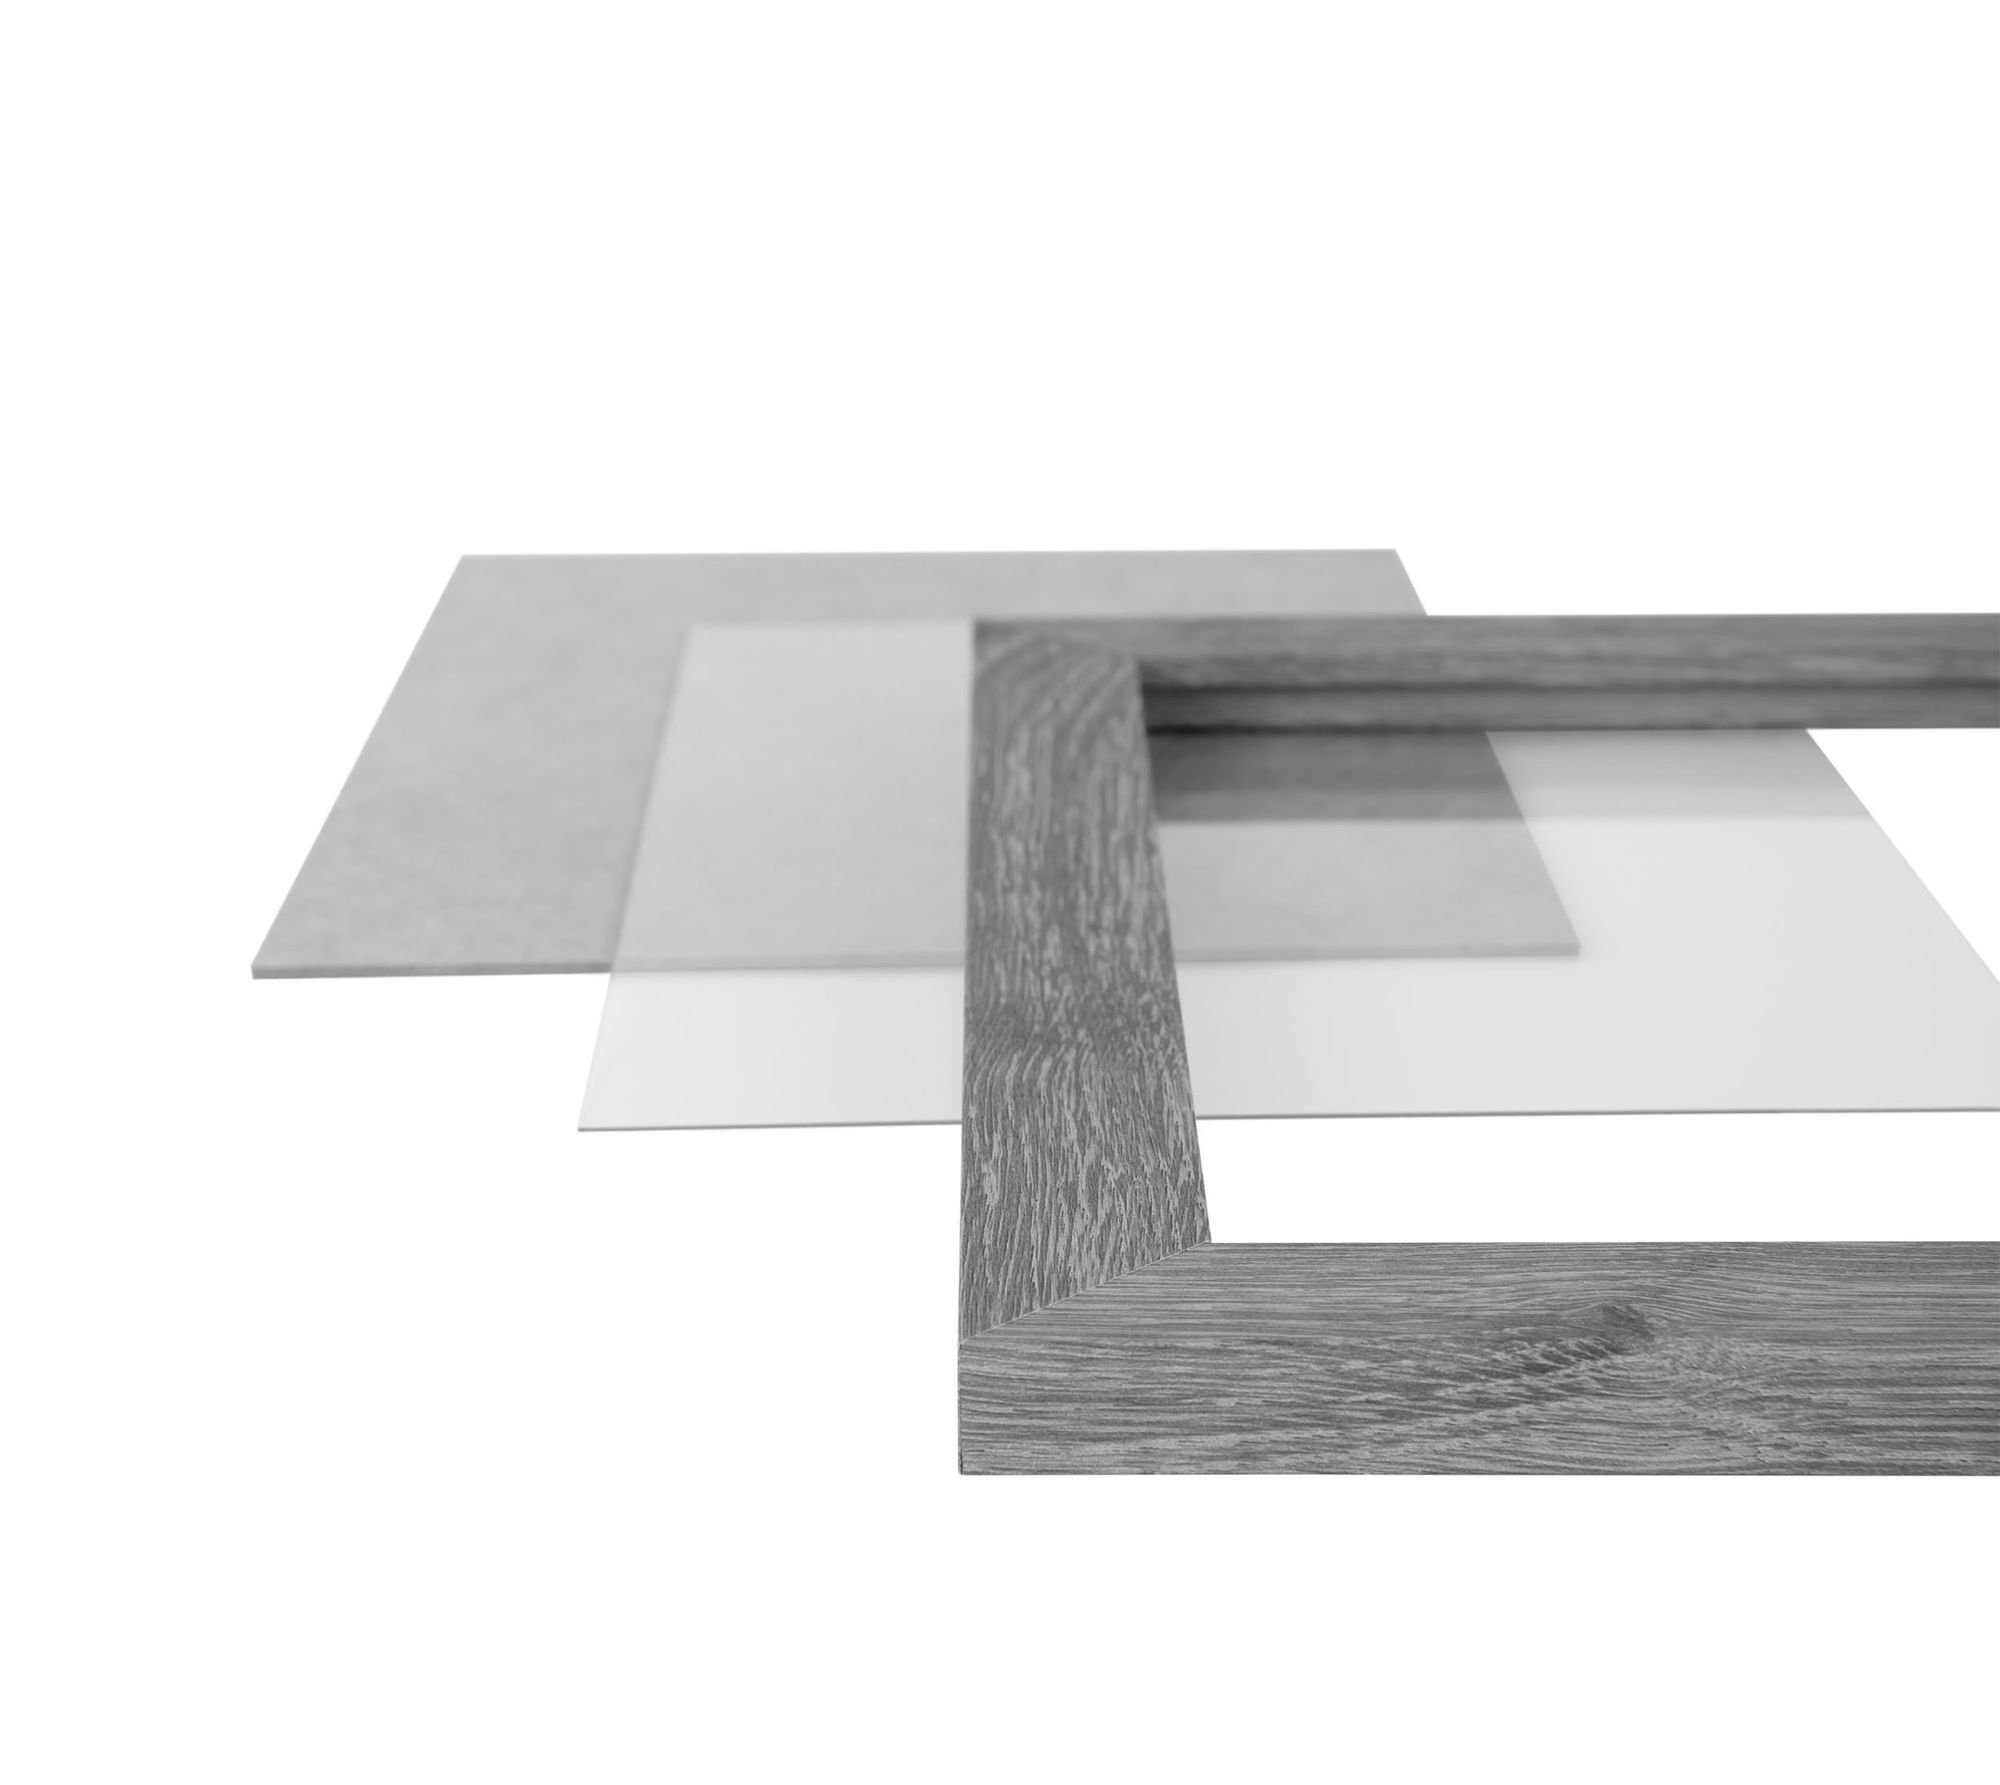 Aufhänger in CLAMARO Holz 'Collage' Bilderrahmen sonama handgefertigt 76x115 FSC® Clamaro MDF Moderner Bilderrahmen eckiger Maß Rahmen eiche nach Acrylglas, und Rückwand inkl.